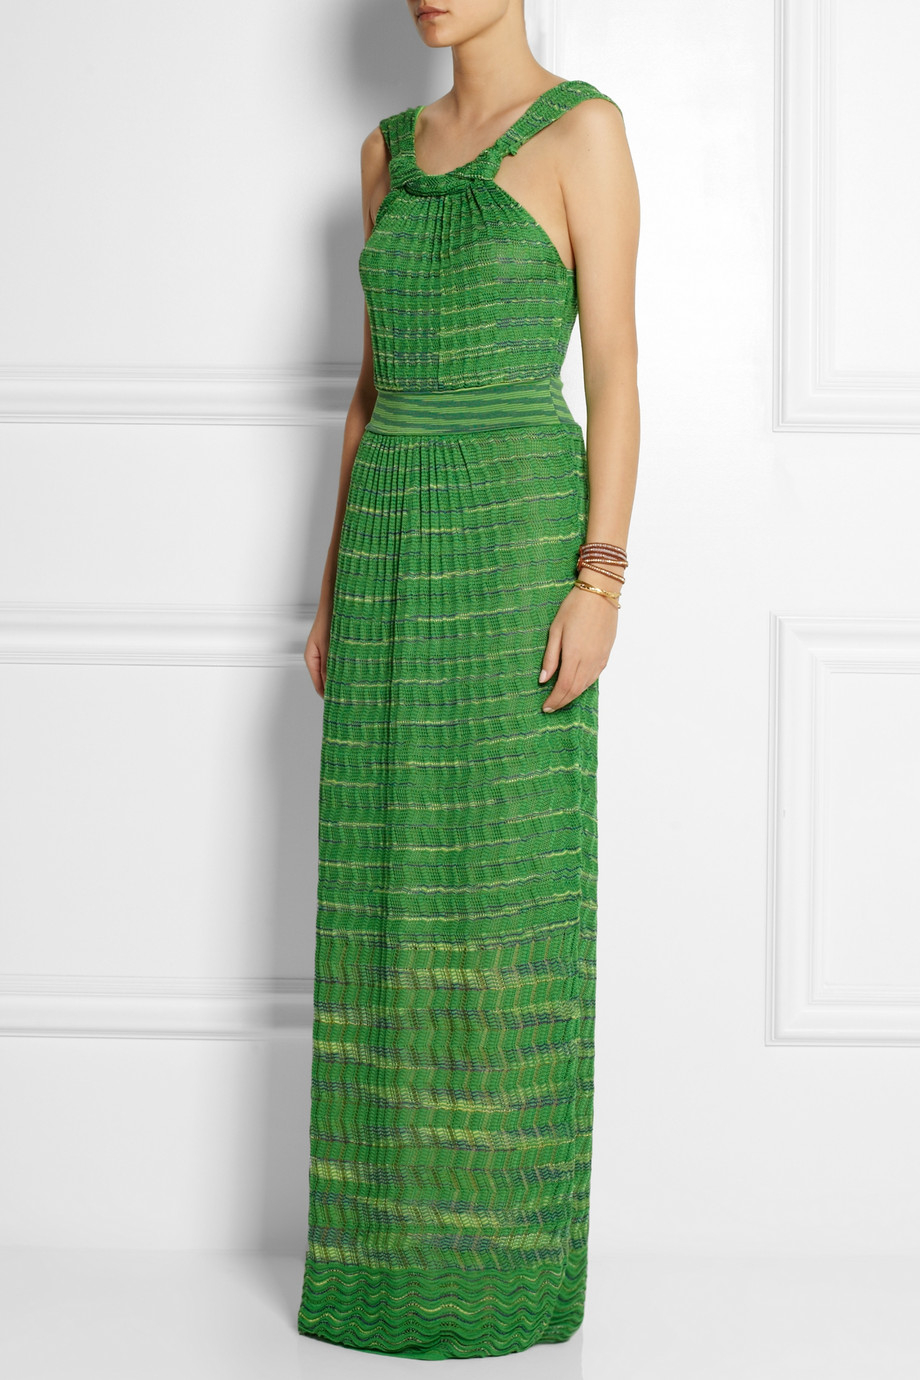 M Missoni Crochet-Knit Cotton-Blend Maxi Dress in Bright Green (Green ...